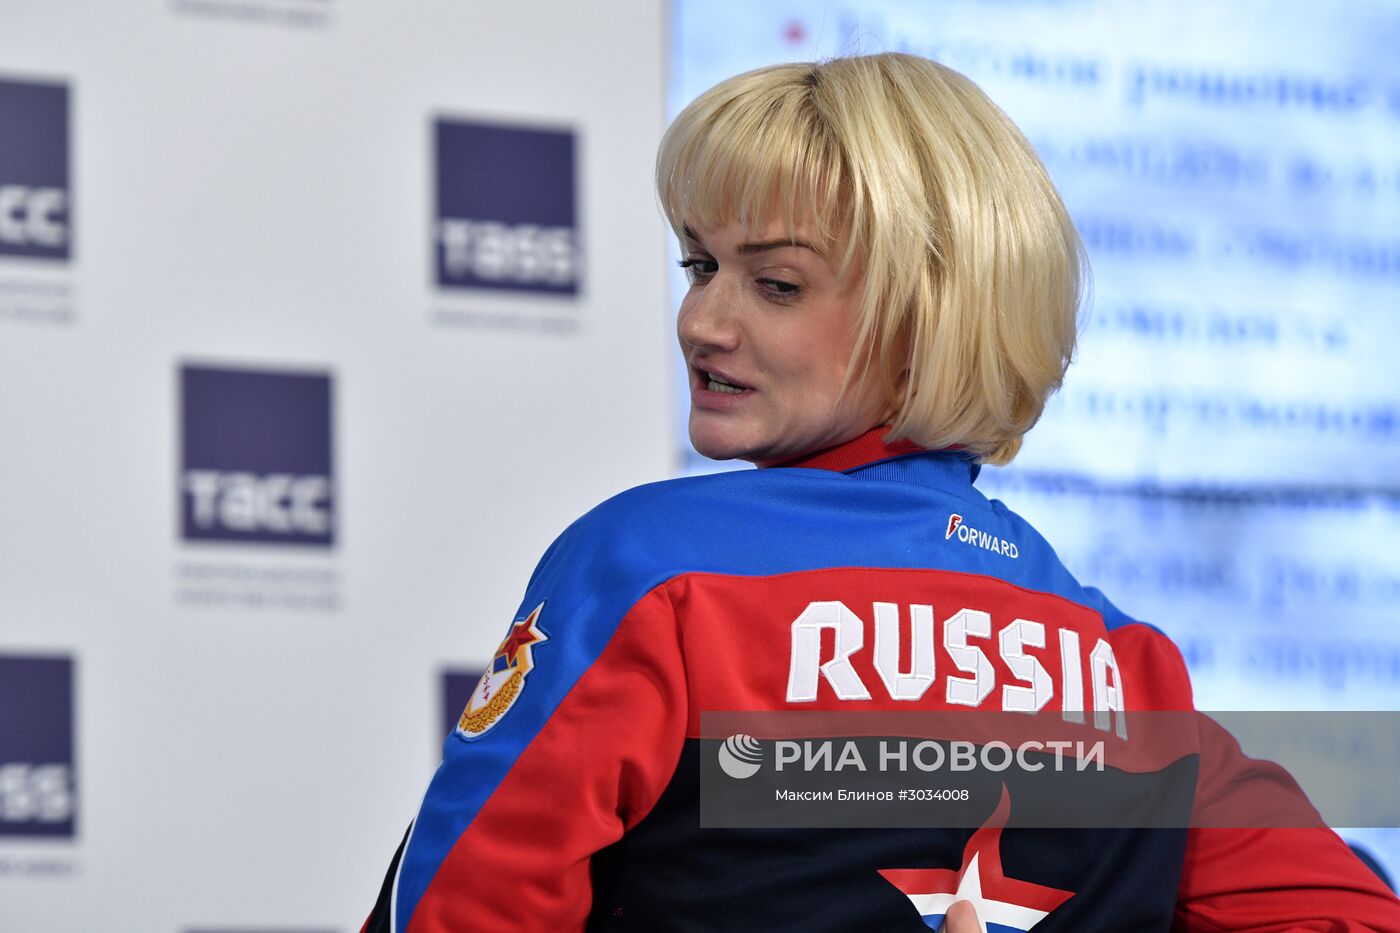 Представление формы сборной России для участия в III зимних Всемирных военных играх